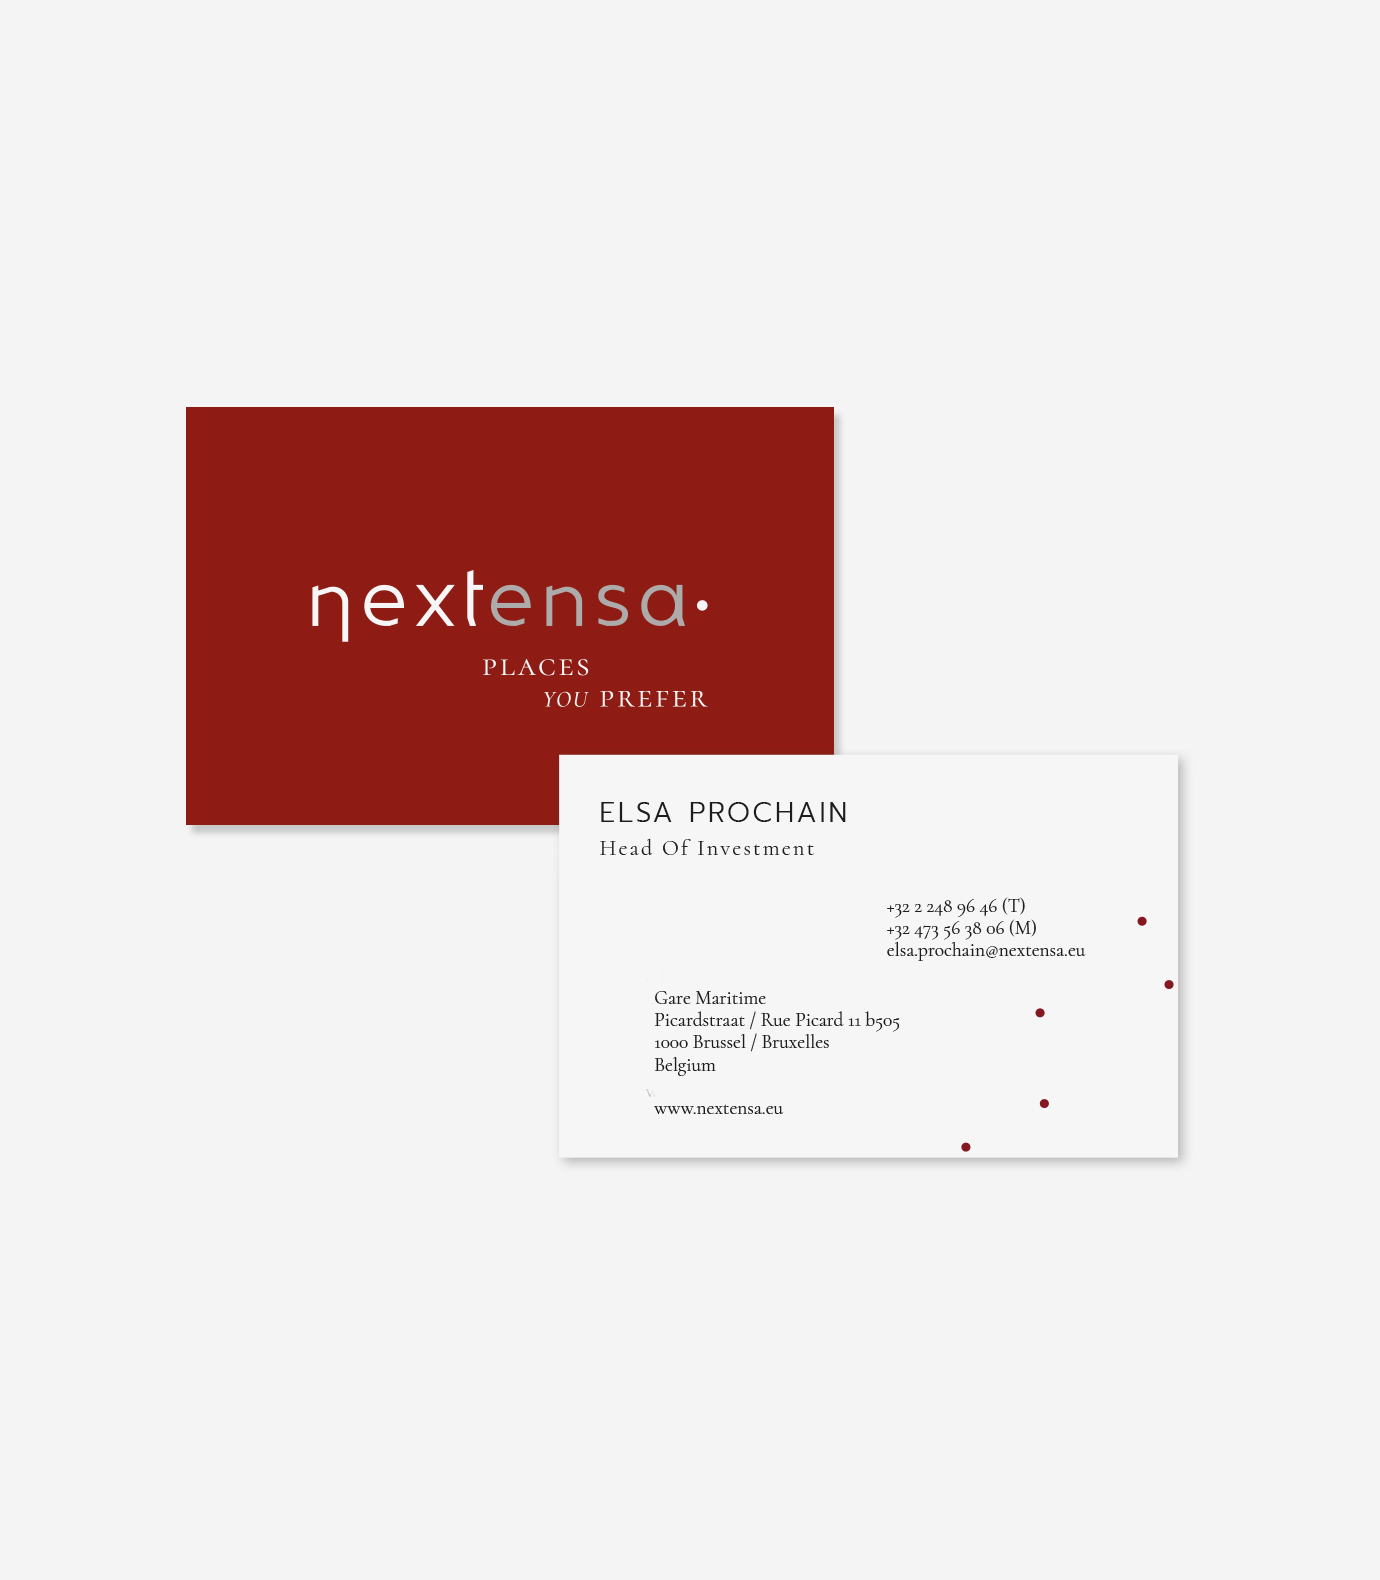 220930_sbww_Nextensa_Businesscards_1380x1580